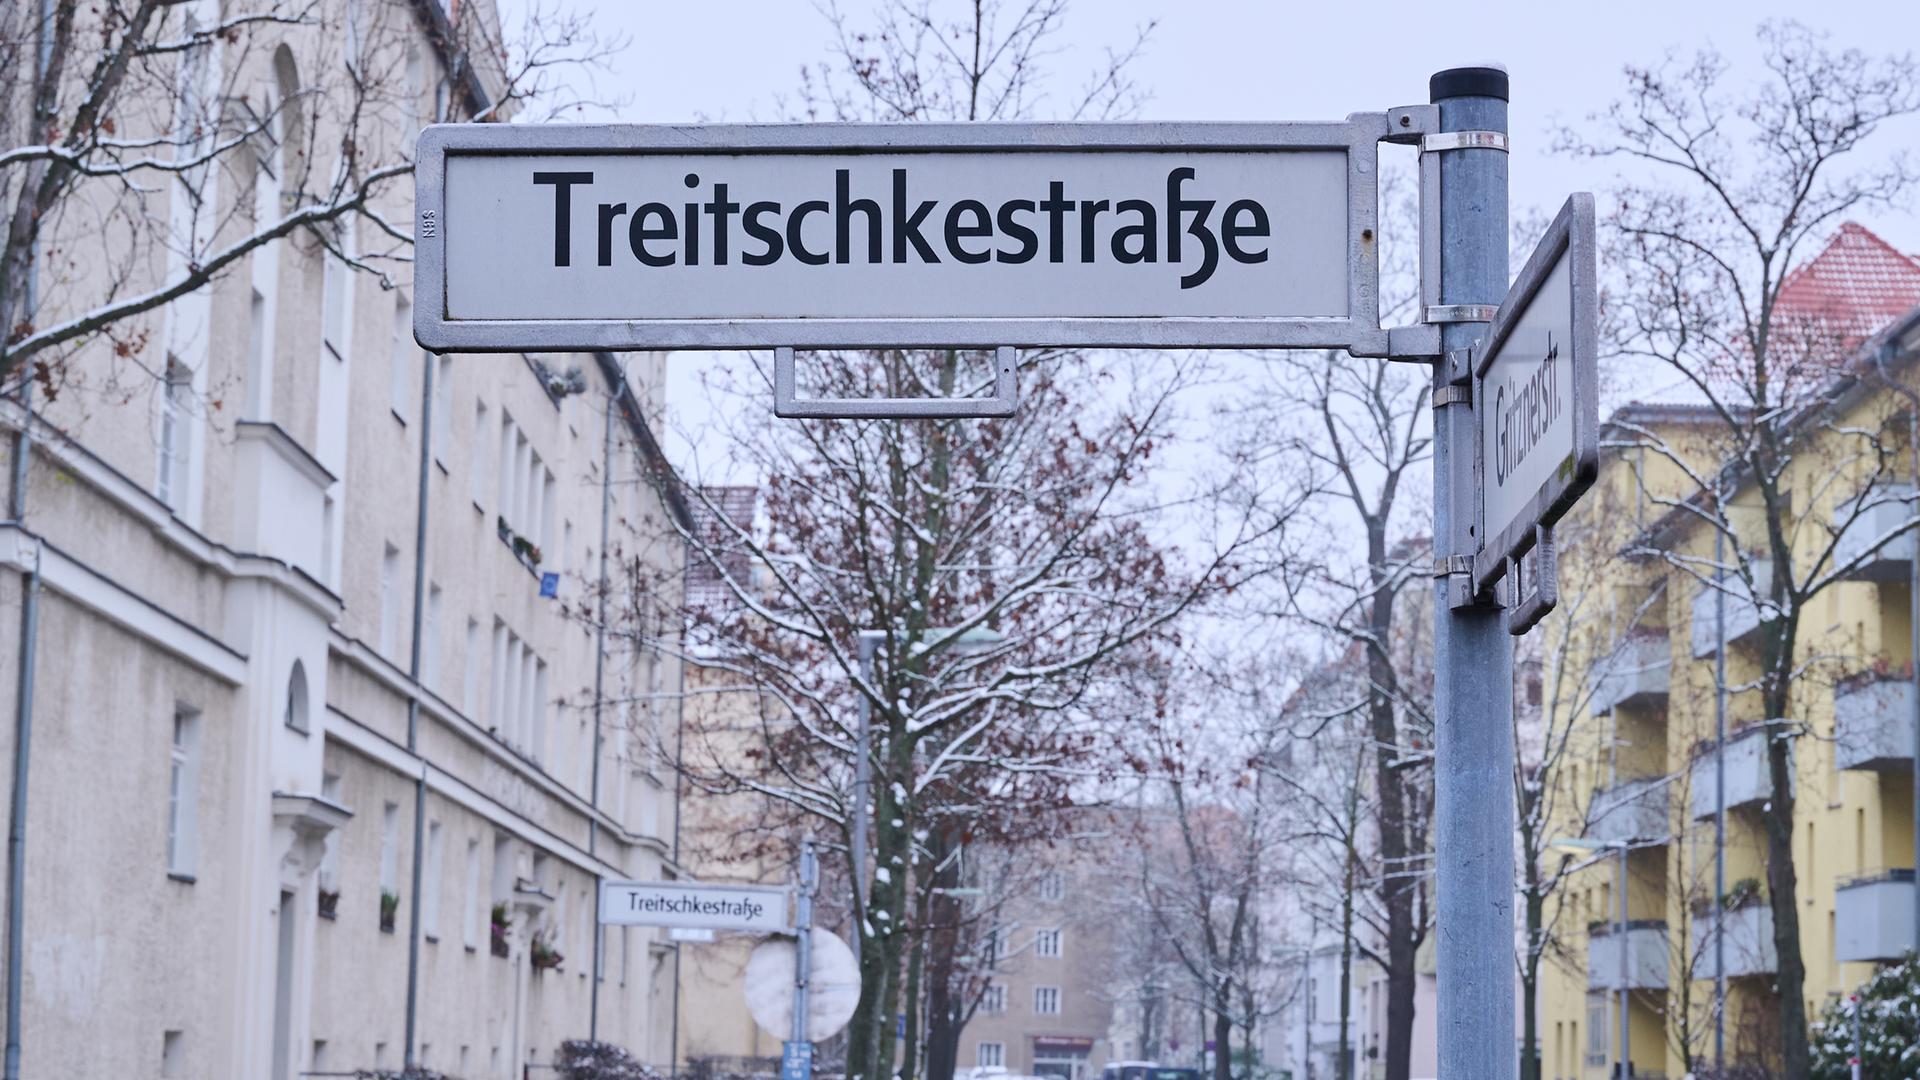 Treitschkestraße steht auf einem Straßenschild in Berlin.